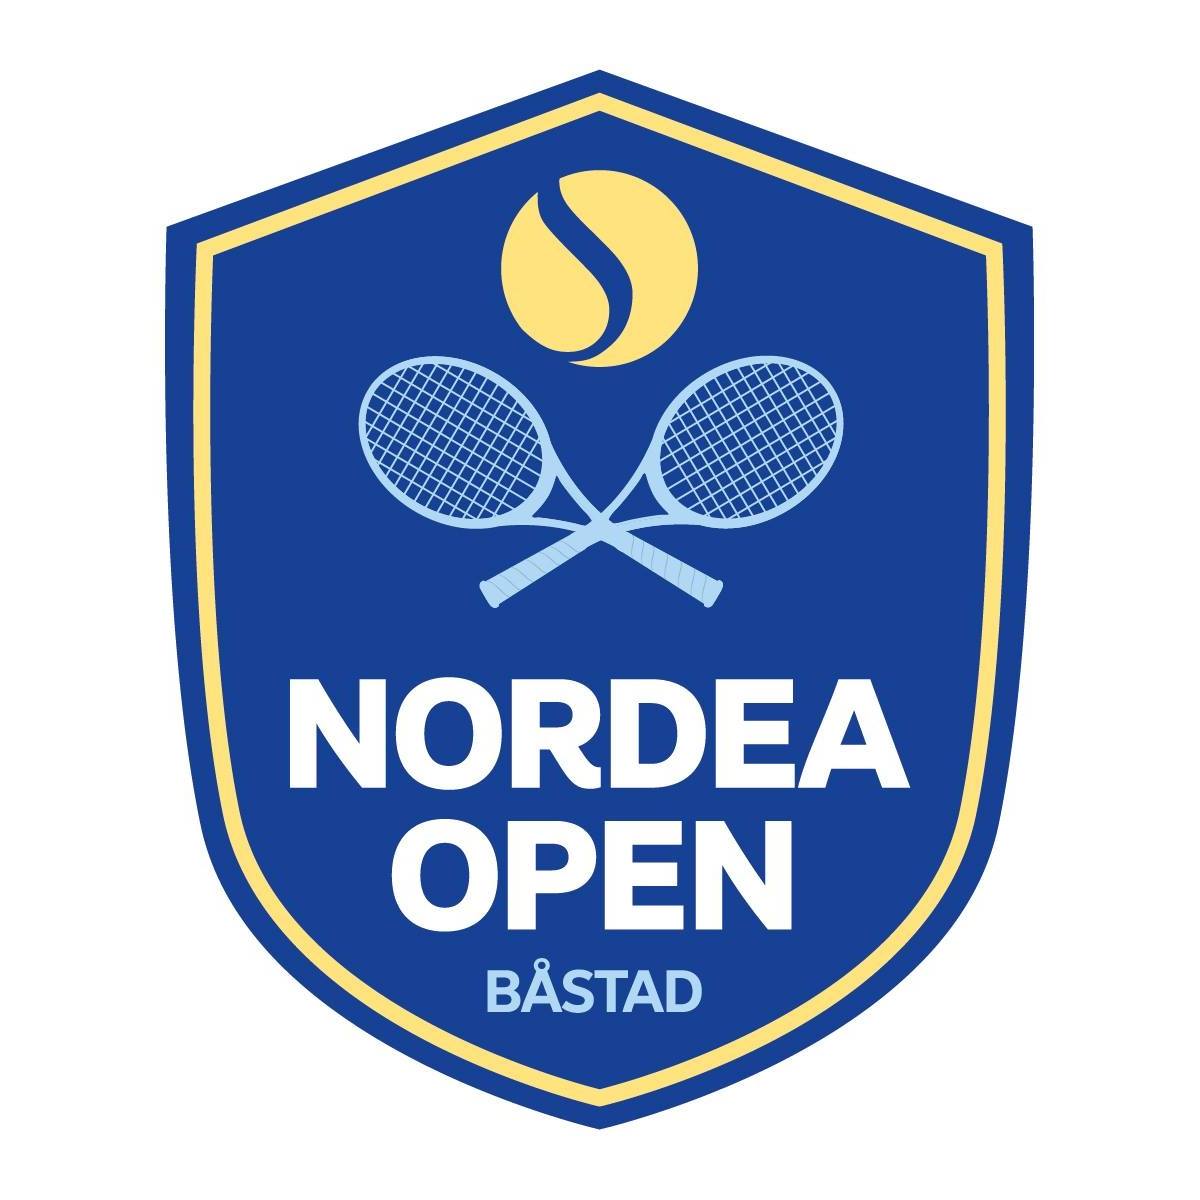 Boka dina aktiviteter och ditt boende med Nordea Open